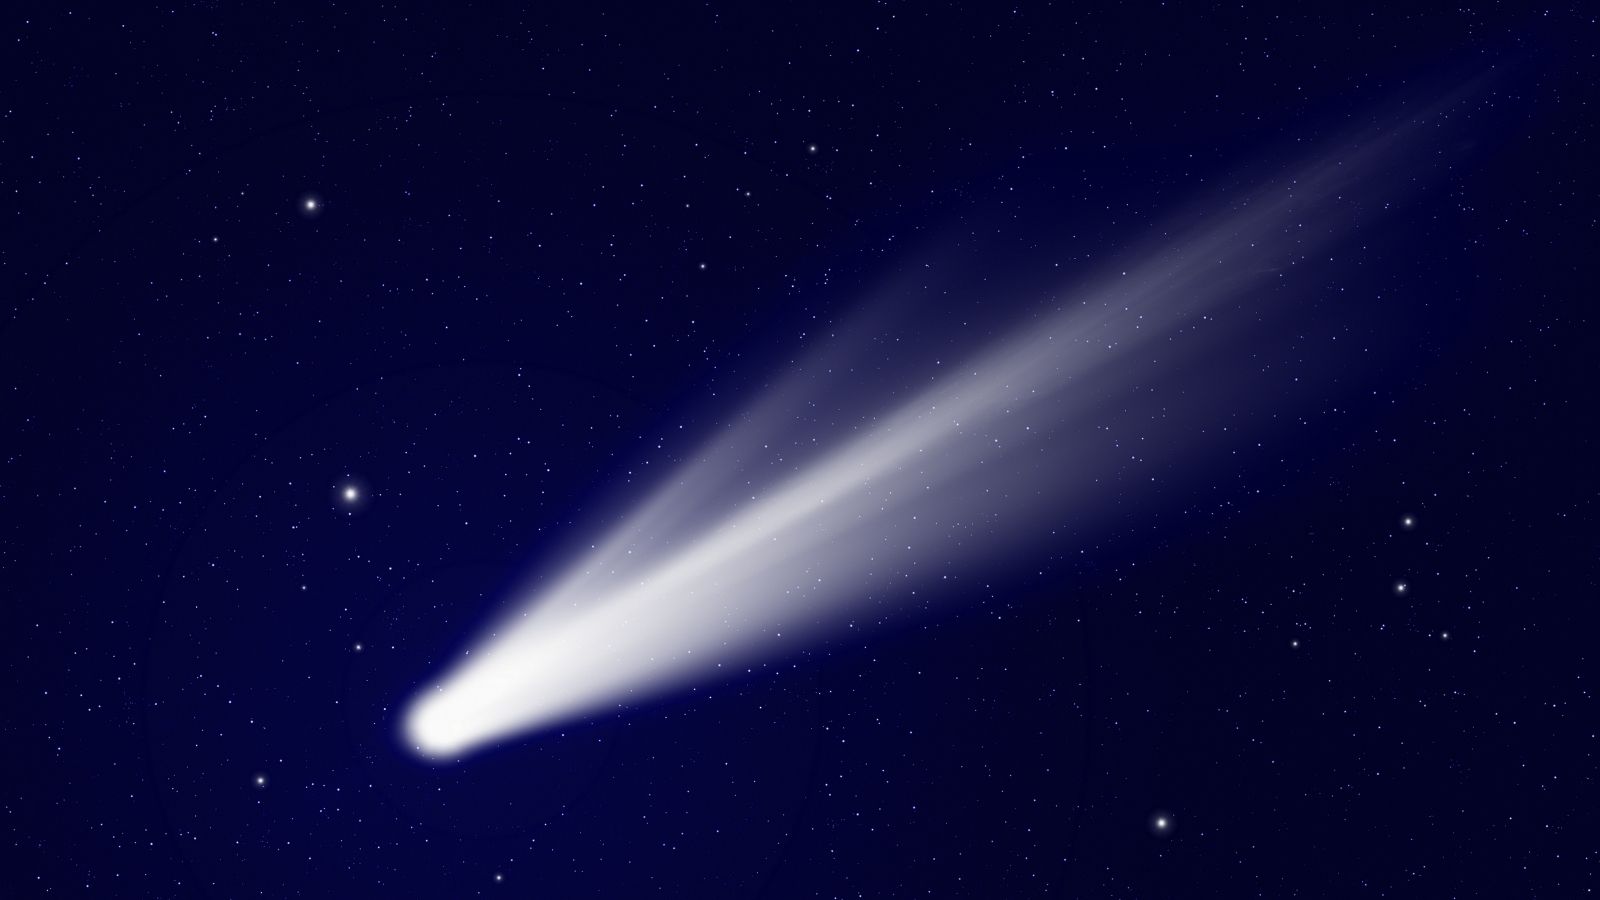 Come guardare la Cometa del Diavolo attraversare i nostri cieli